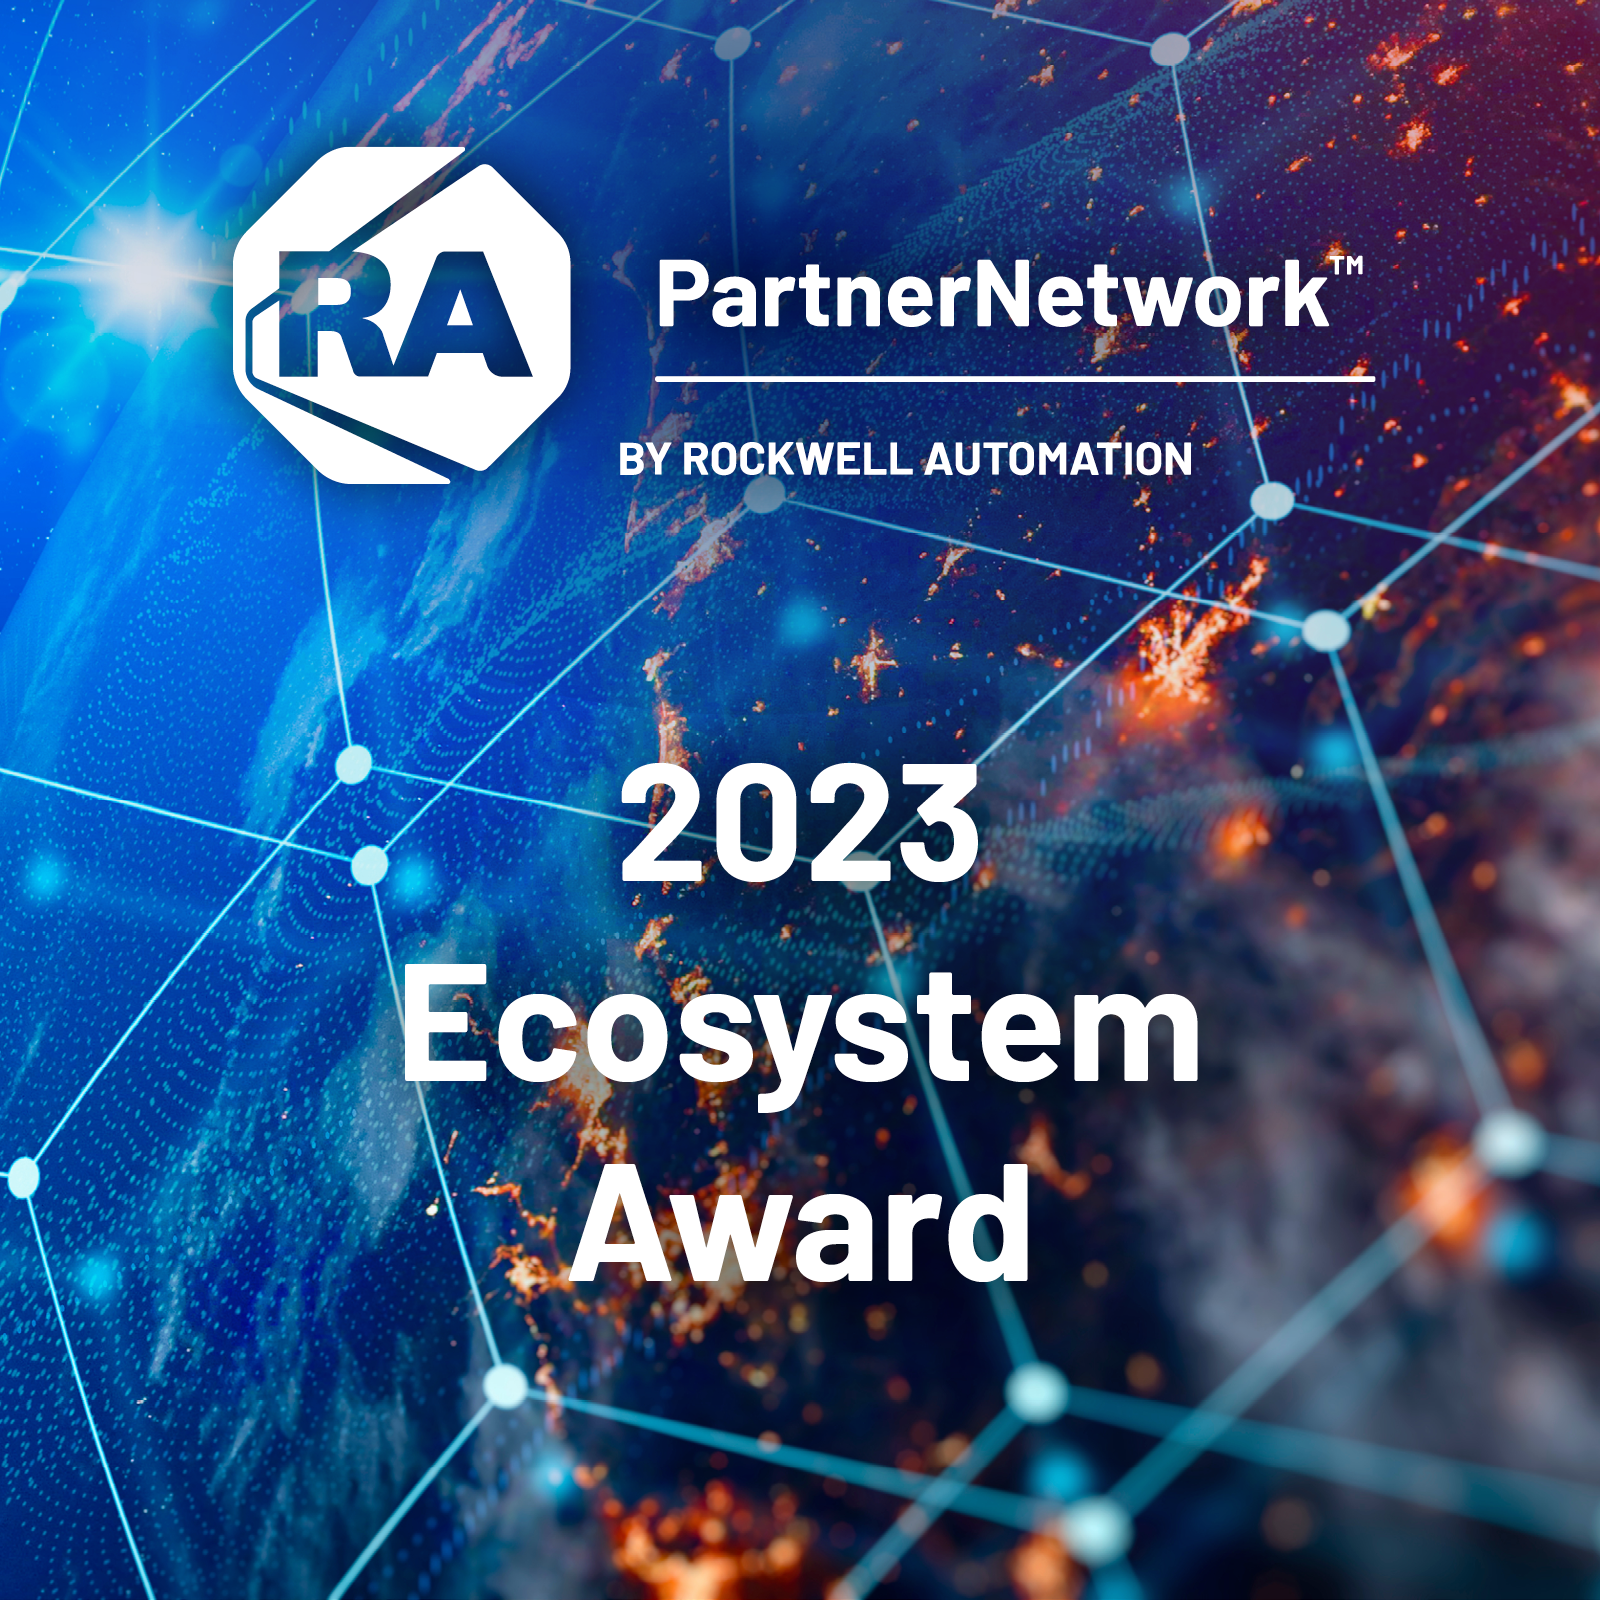 Nagroda Rockwell Automation PartnerNetwork Ecosystem Award 2023